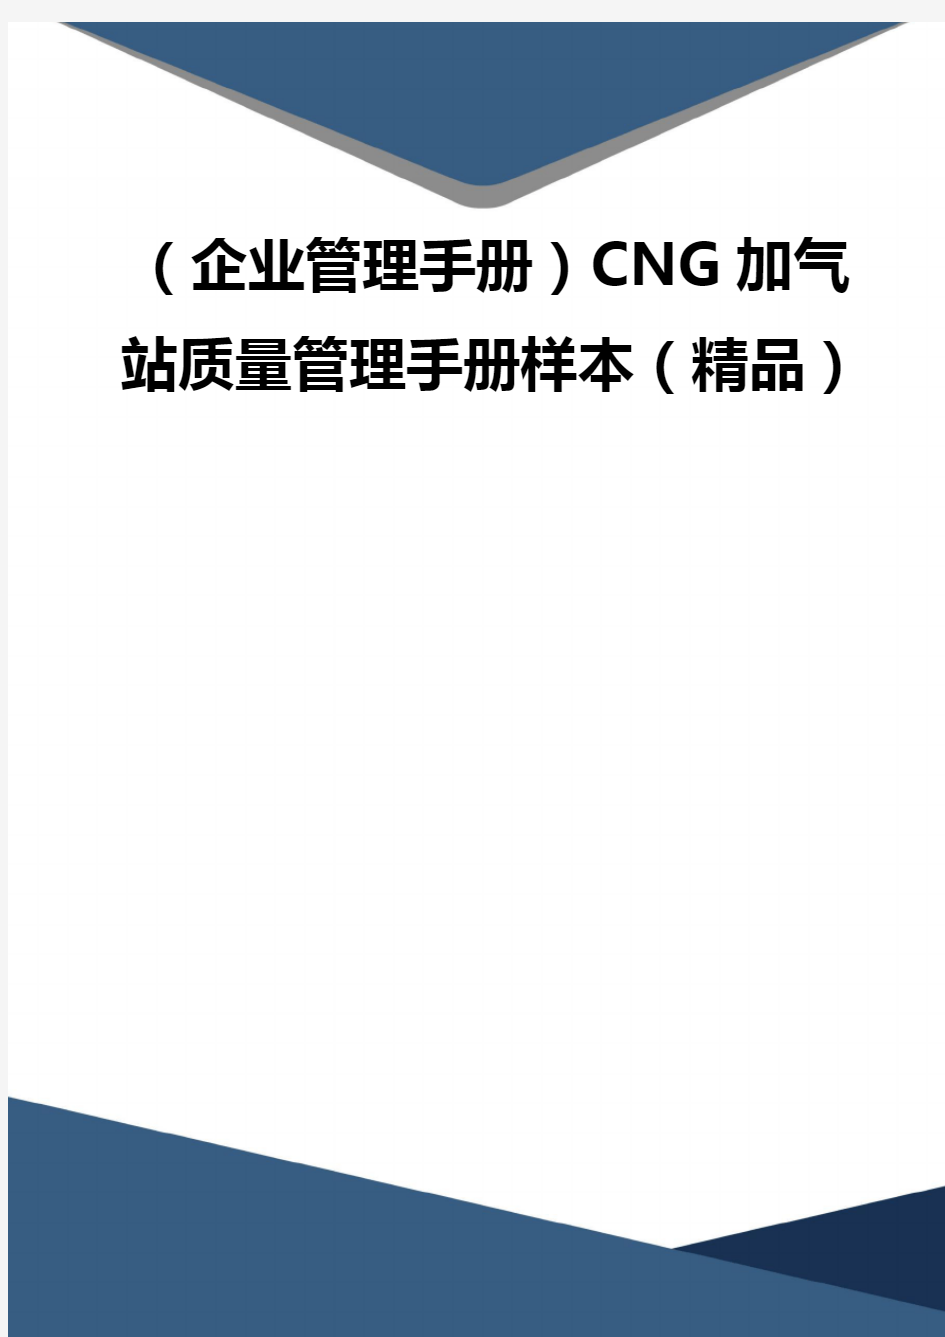 (企业管理手册)CNG加气站质量管理手册样本(精品)